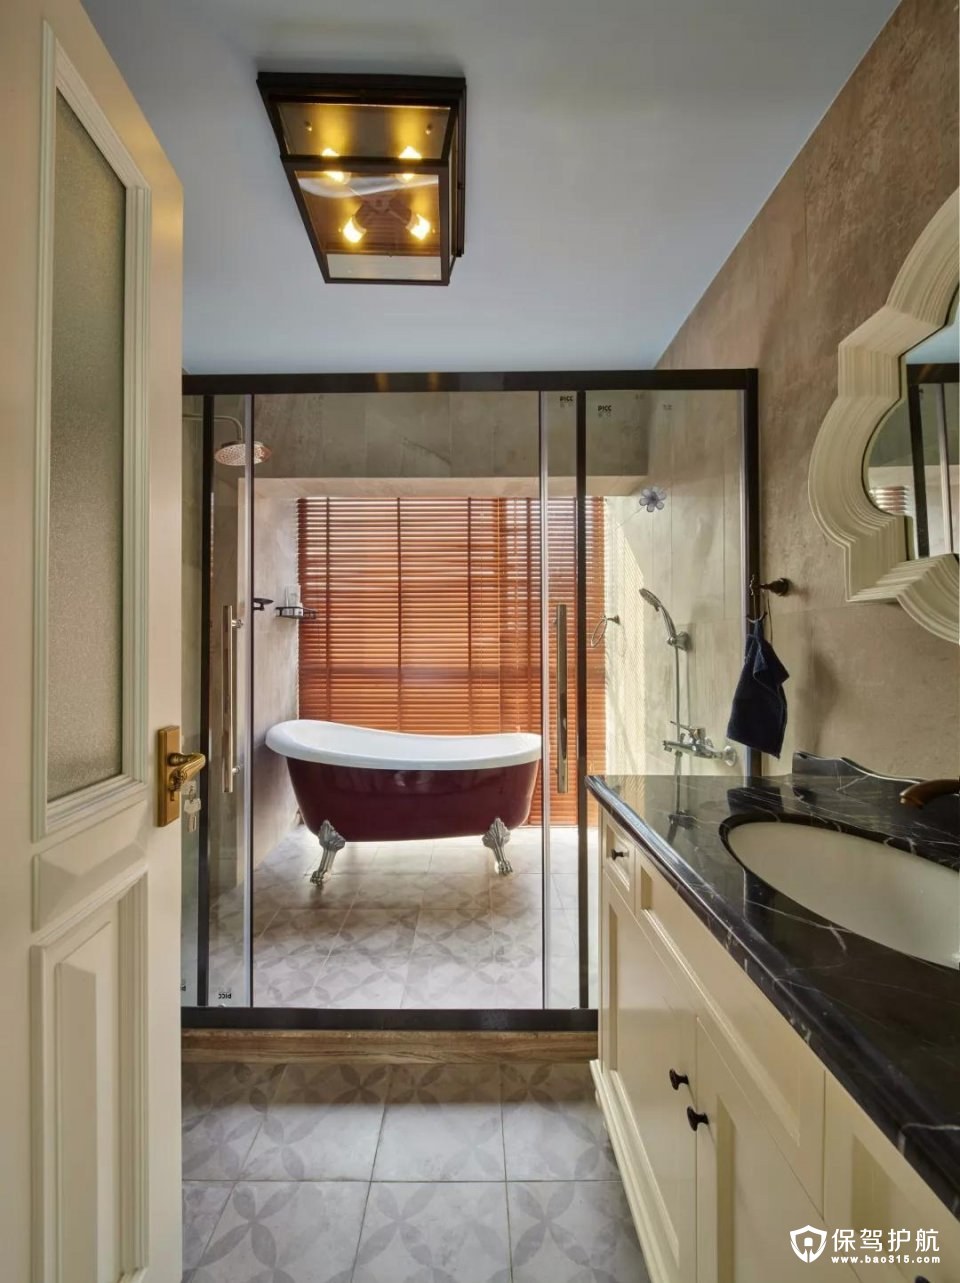 主卫里摆一个成品浴缸，以木色的百叶窗帘，让这个浴室显得格外的自然舒适；